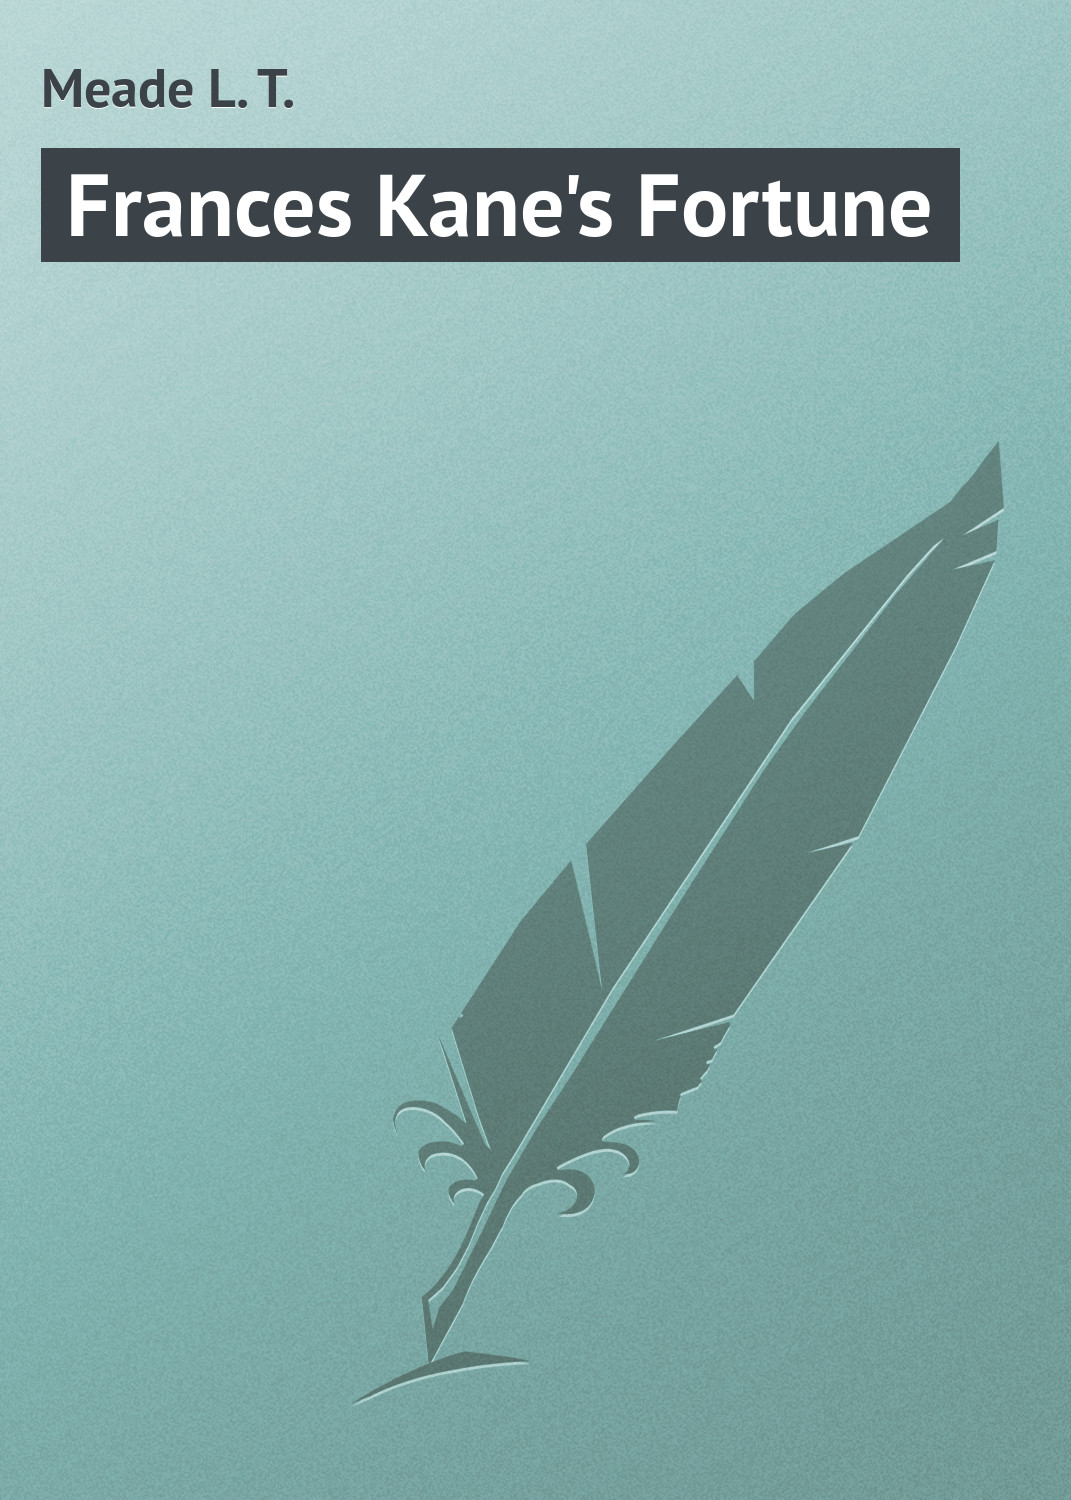 Книга Frances Kane's Fortune из серии , созданная L. Meade, может относится к жанру Зарубежная классика. Стоимость электронной книги Frances Kane's Fortune с идентификатором 23165923 составляет 5.99 руб.